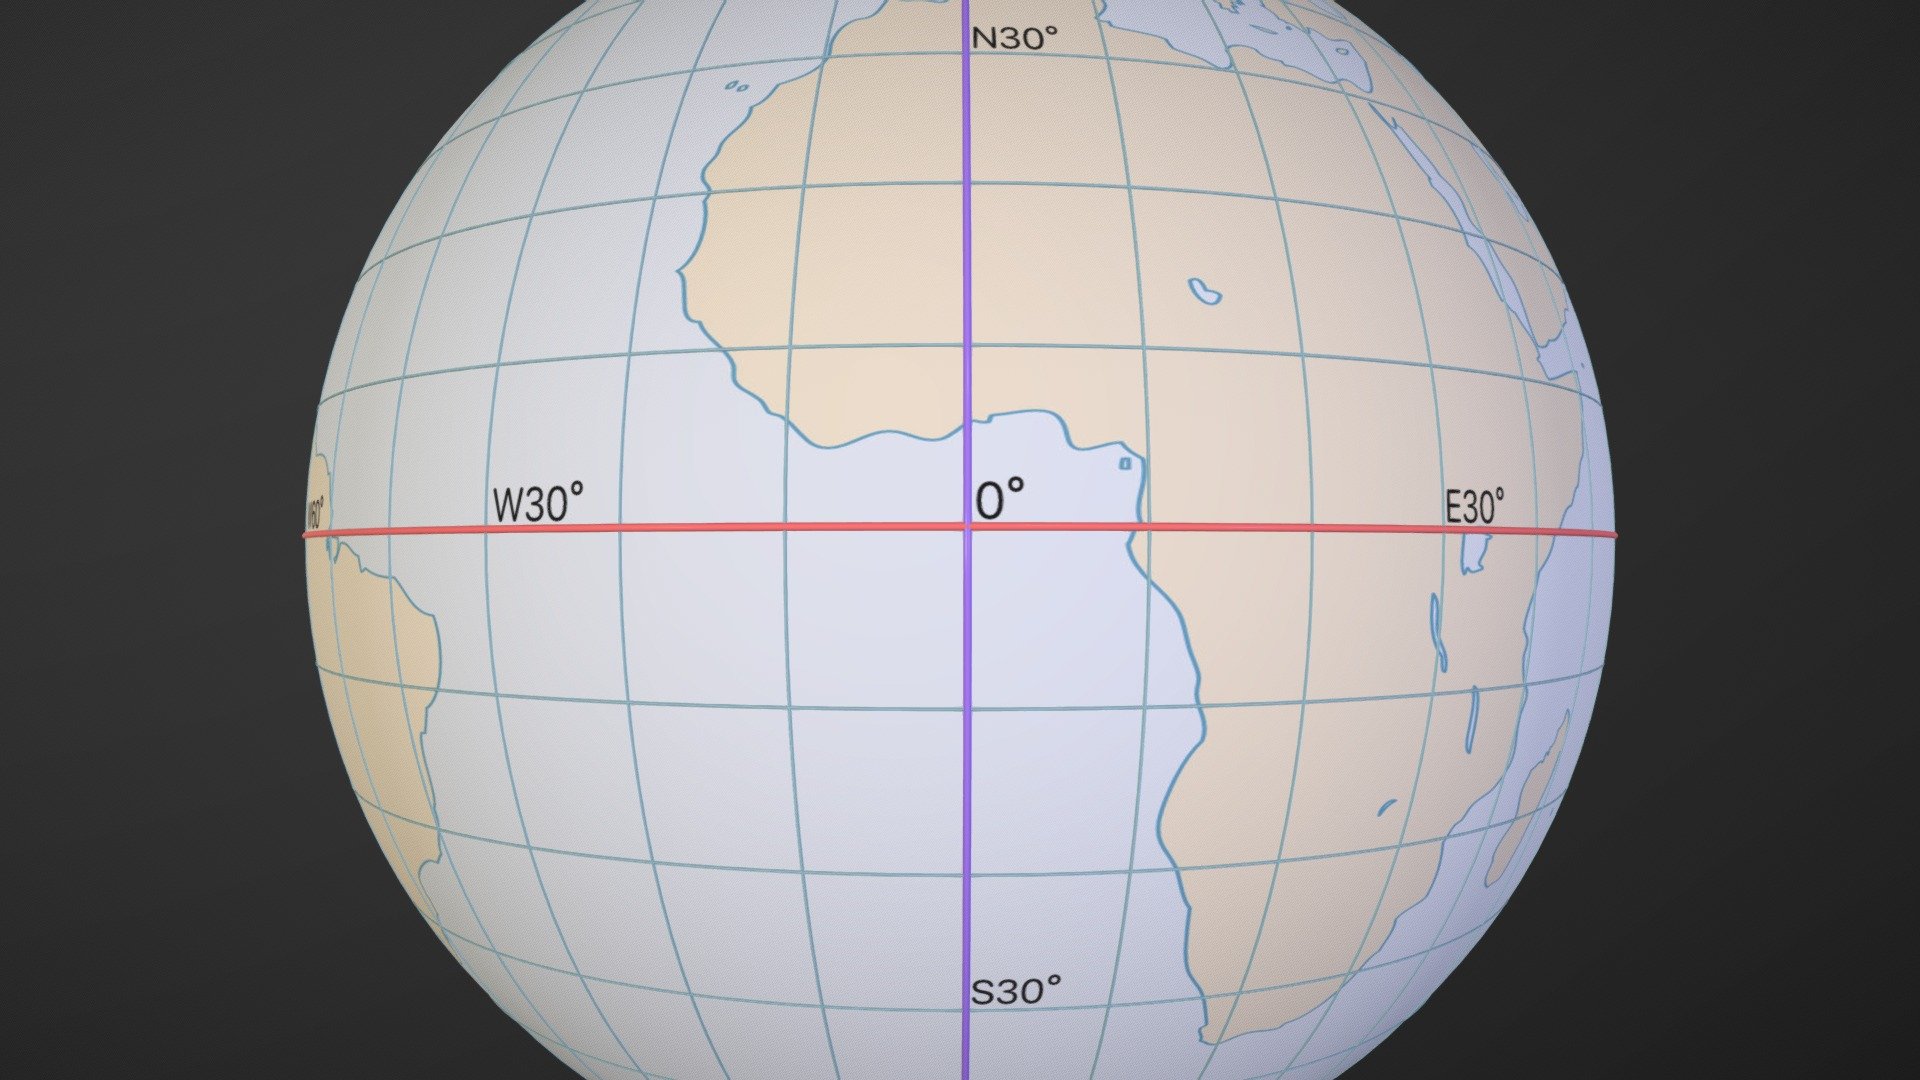 latitude and longitude globe